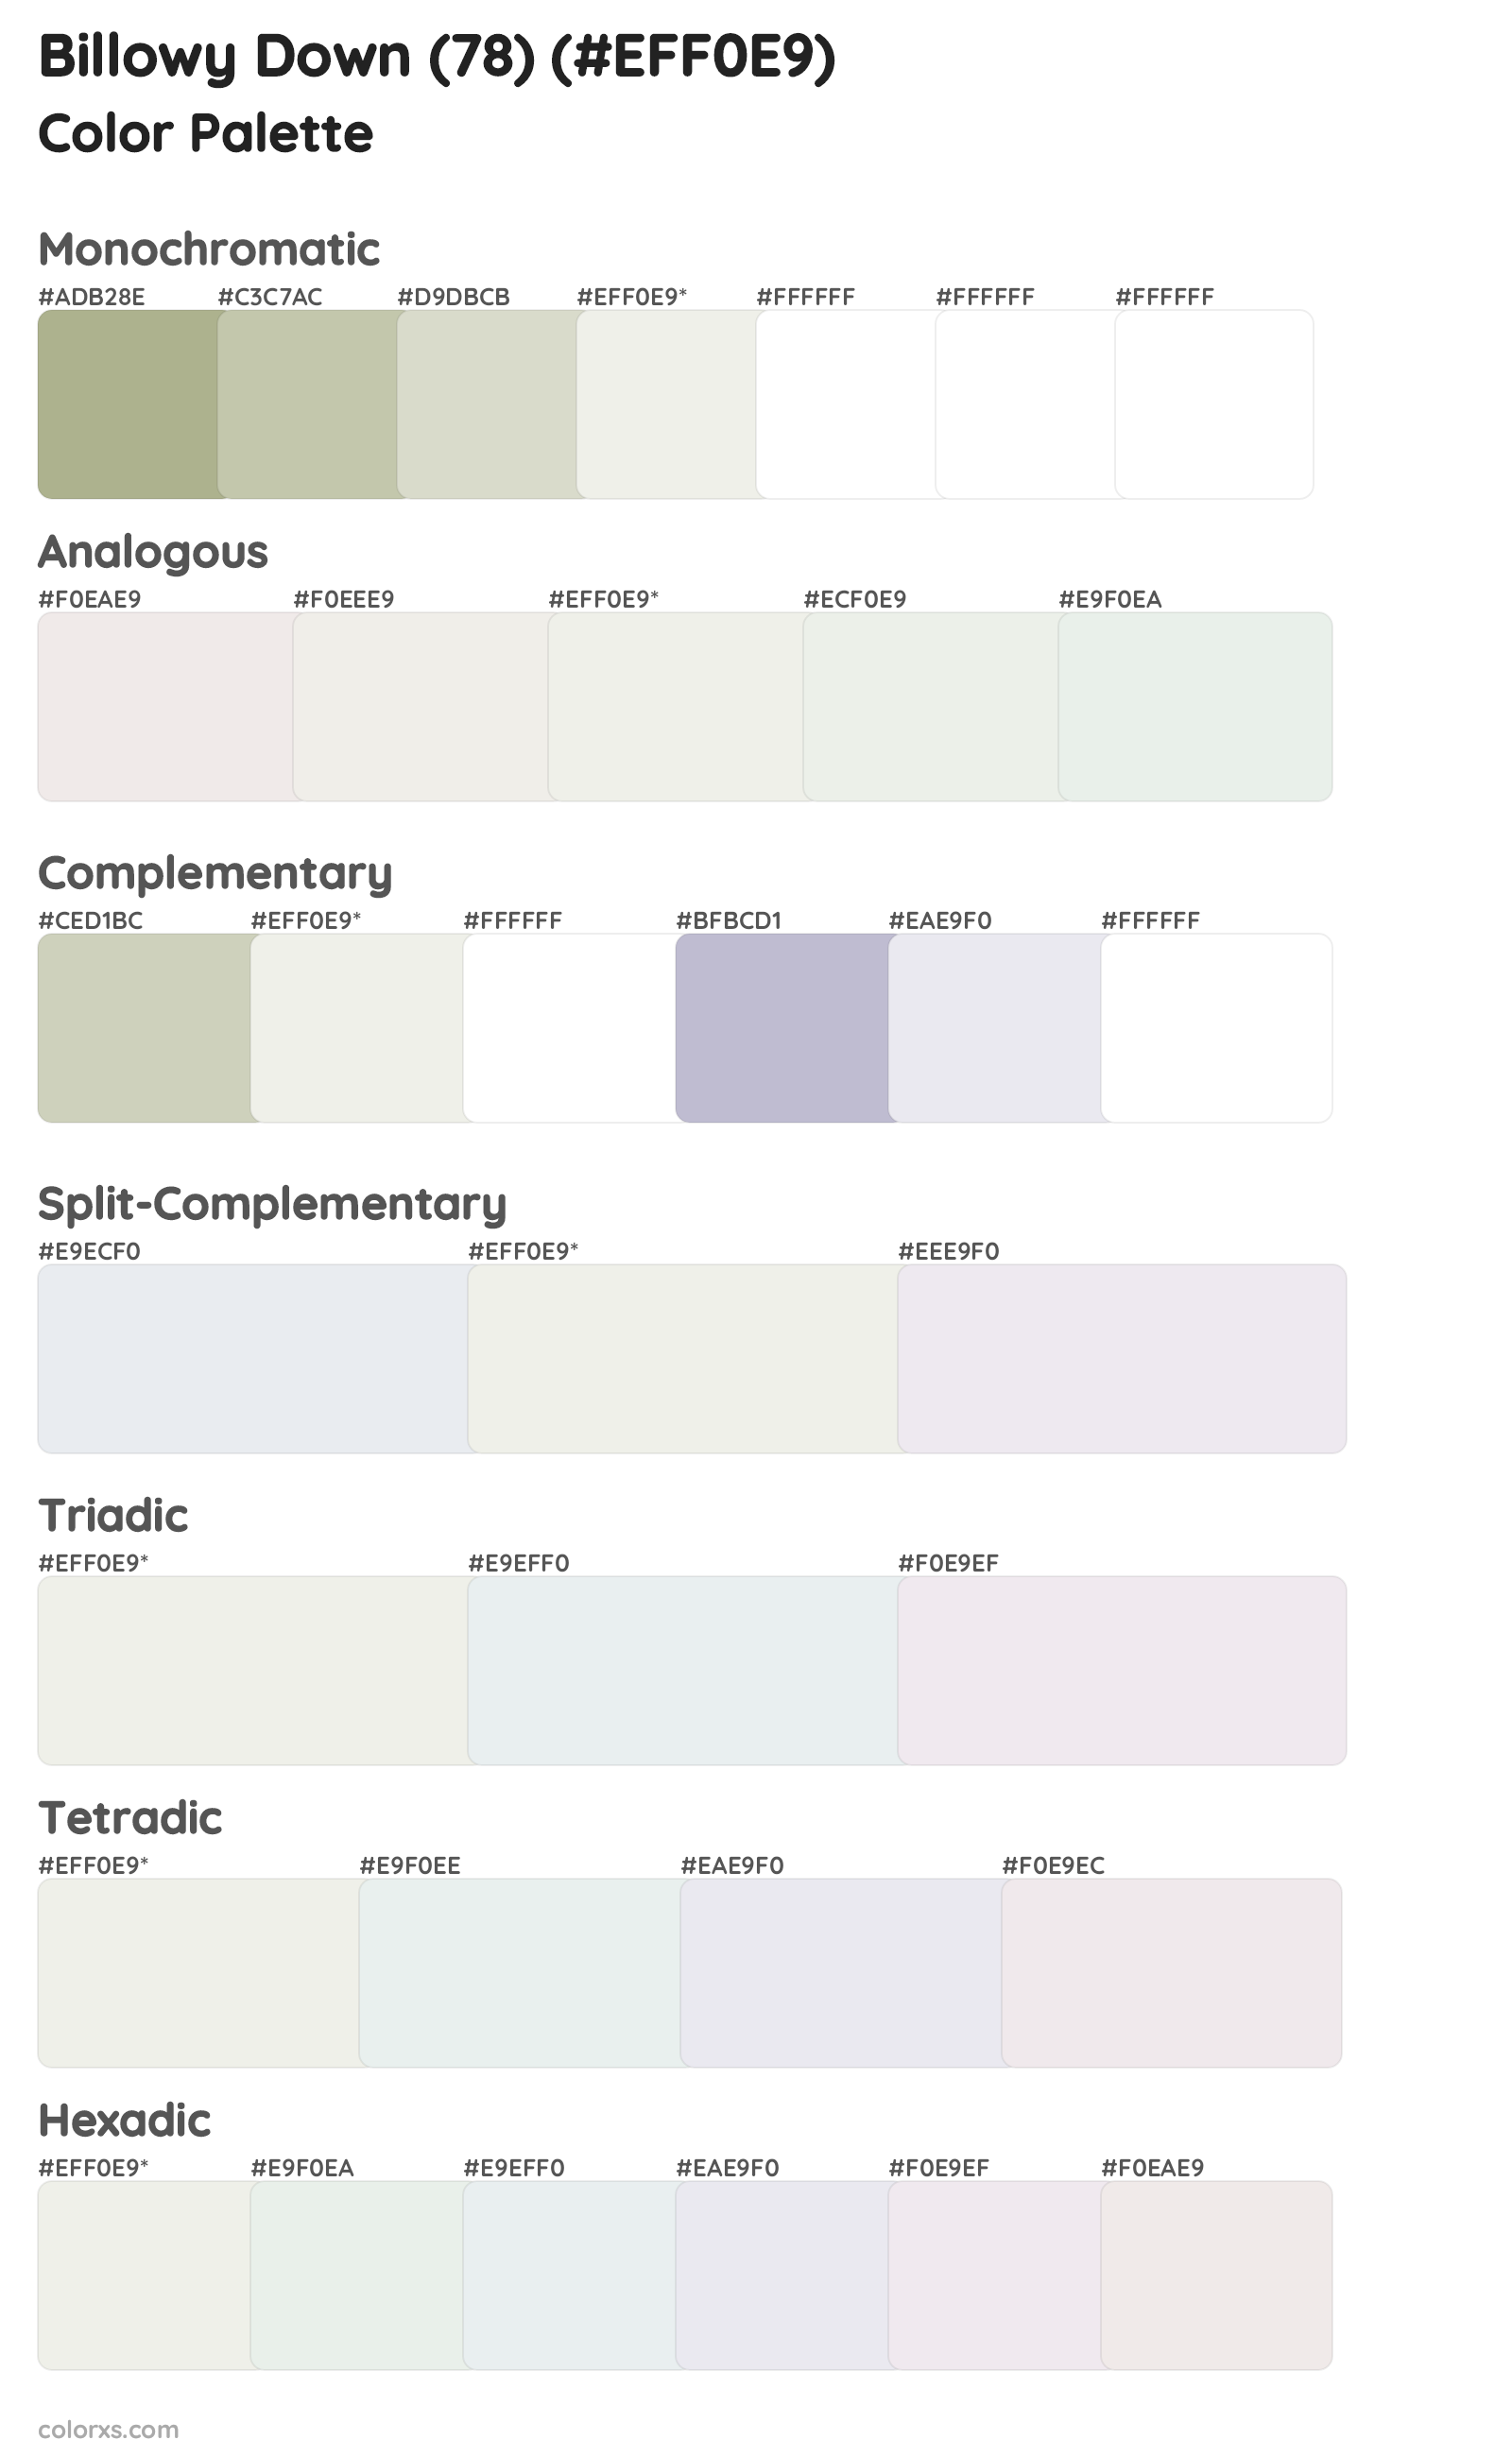 Billowy Down (78) Color Scheme Palettes